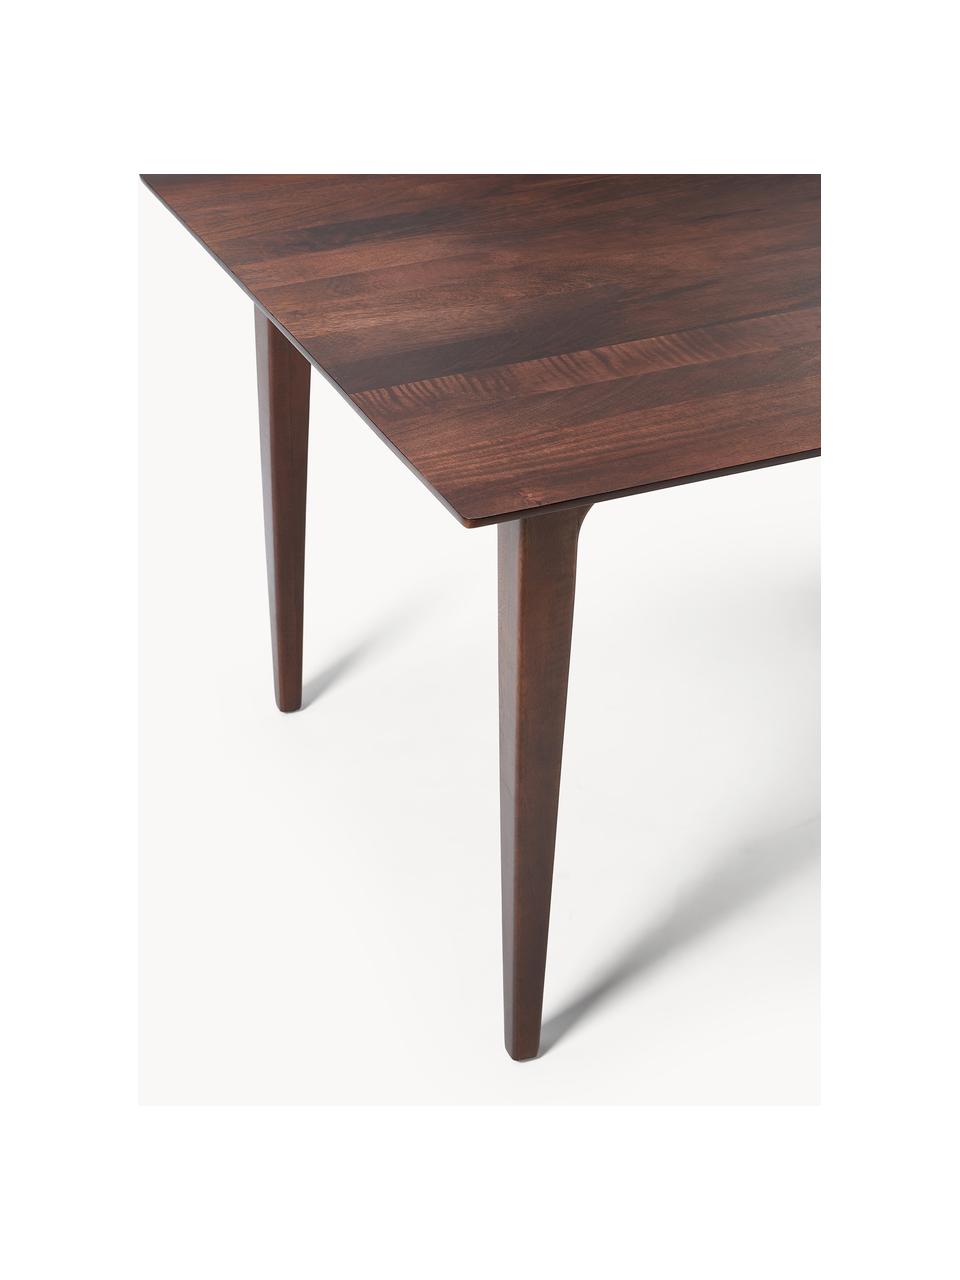 Jedálenský stôl z mangového dreva Archie, v rôznych veľkostiach, Mangové drevo, lakované
Tento produkt je vyrobený z trvalo udržateľného dreva s certifikátom FSC®., Tmavé mangové drevo, Š 160 x H 90 cm